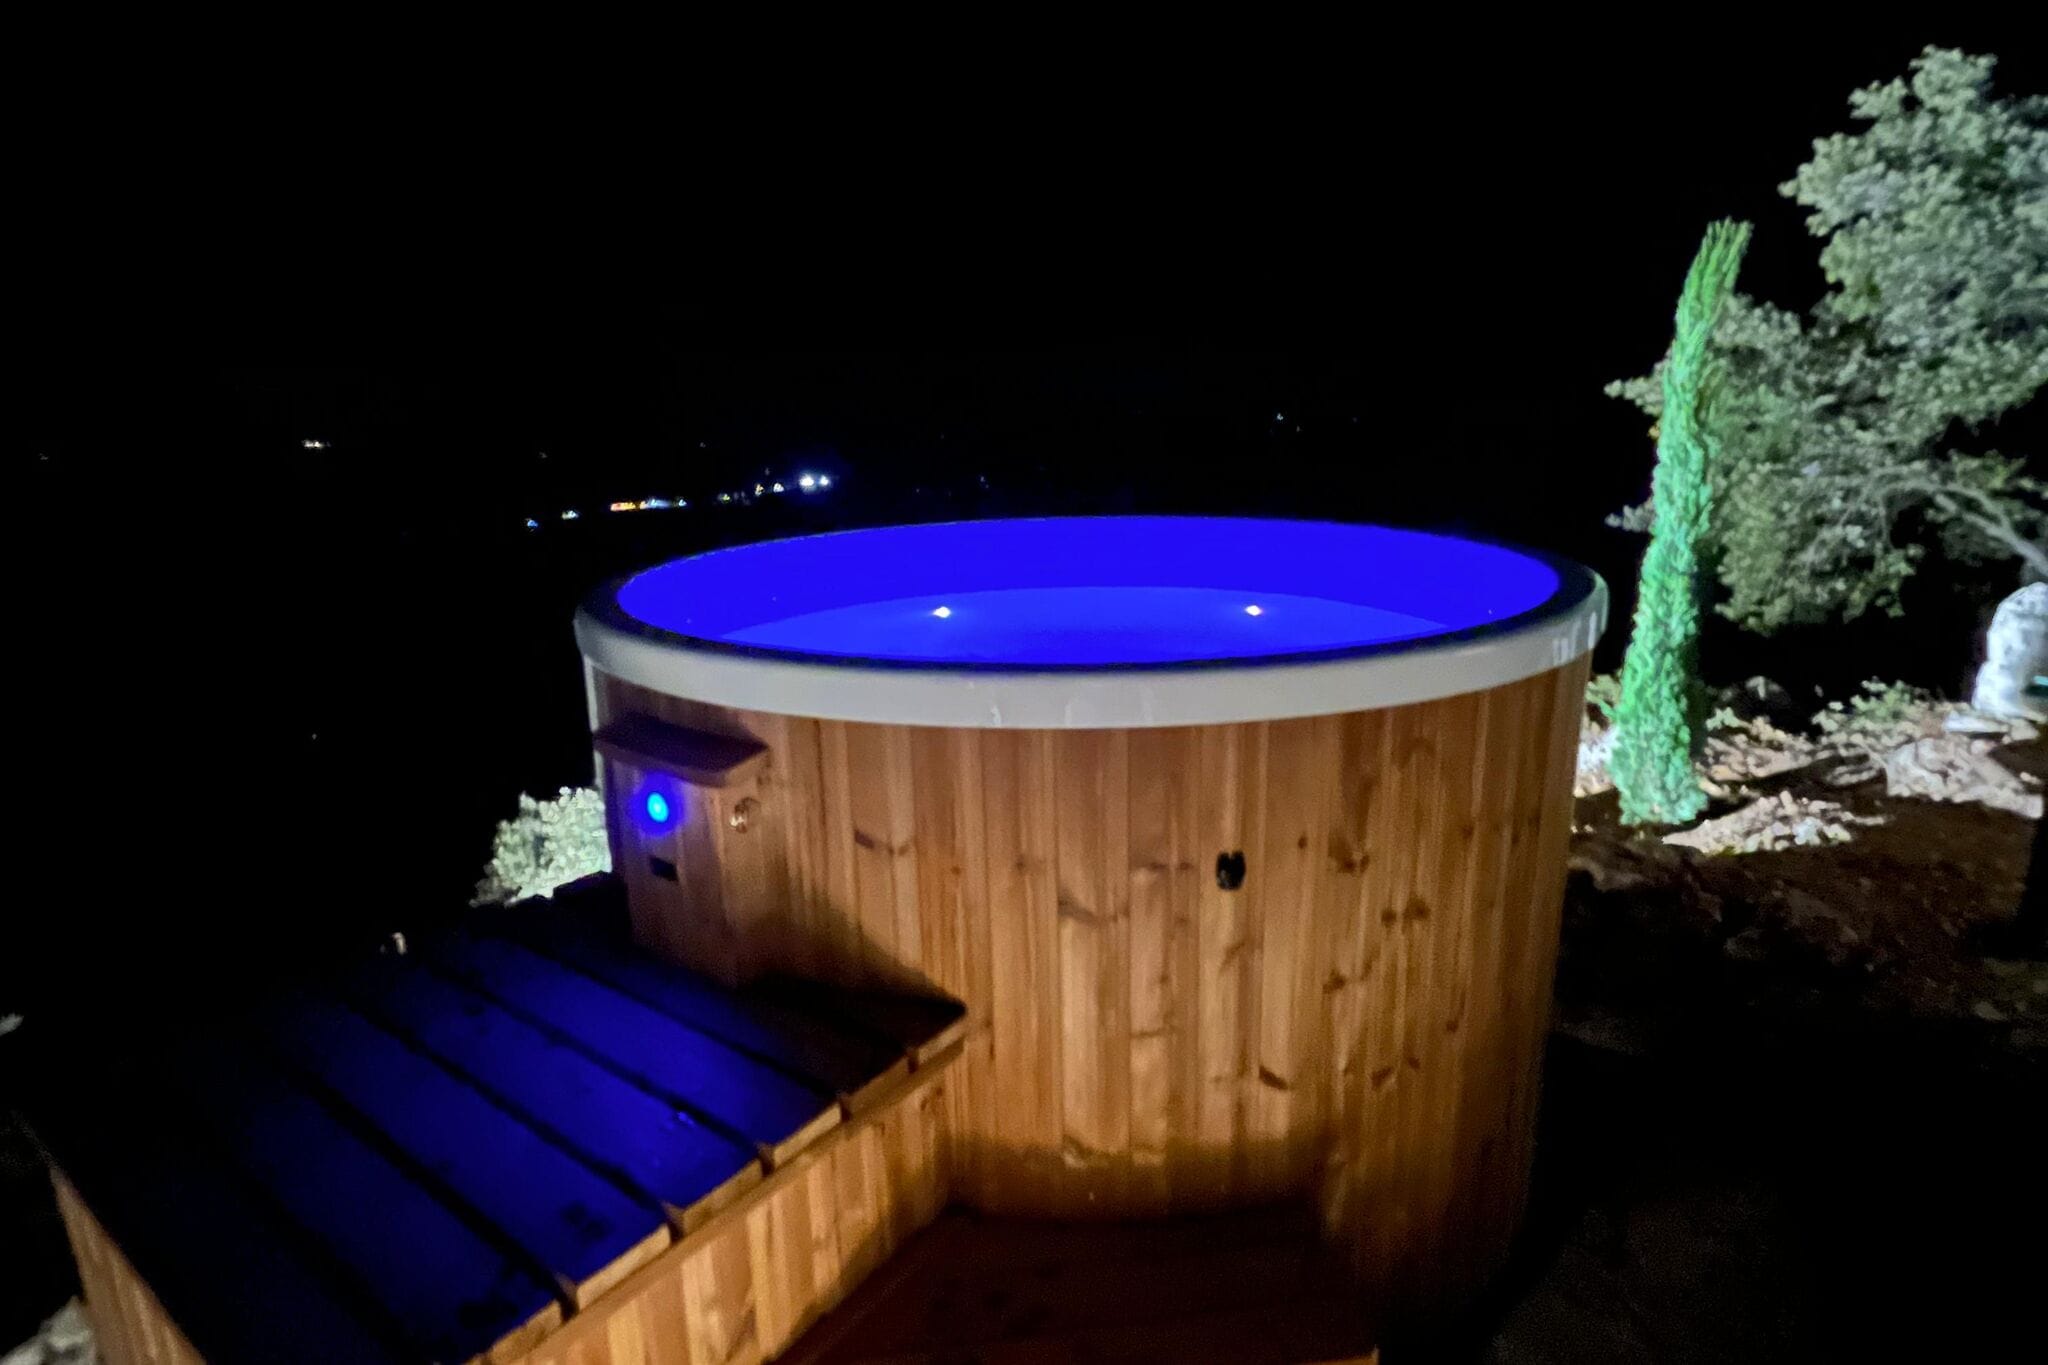 Villa met privé zwembad, sauna en jacuzzi in Tourtour